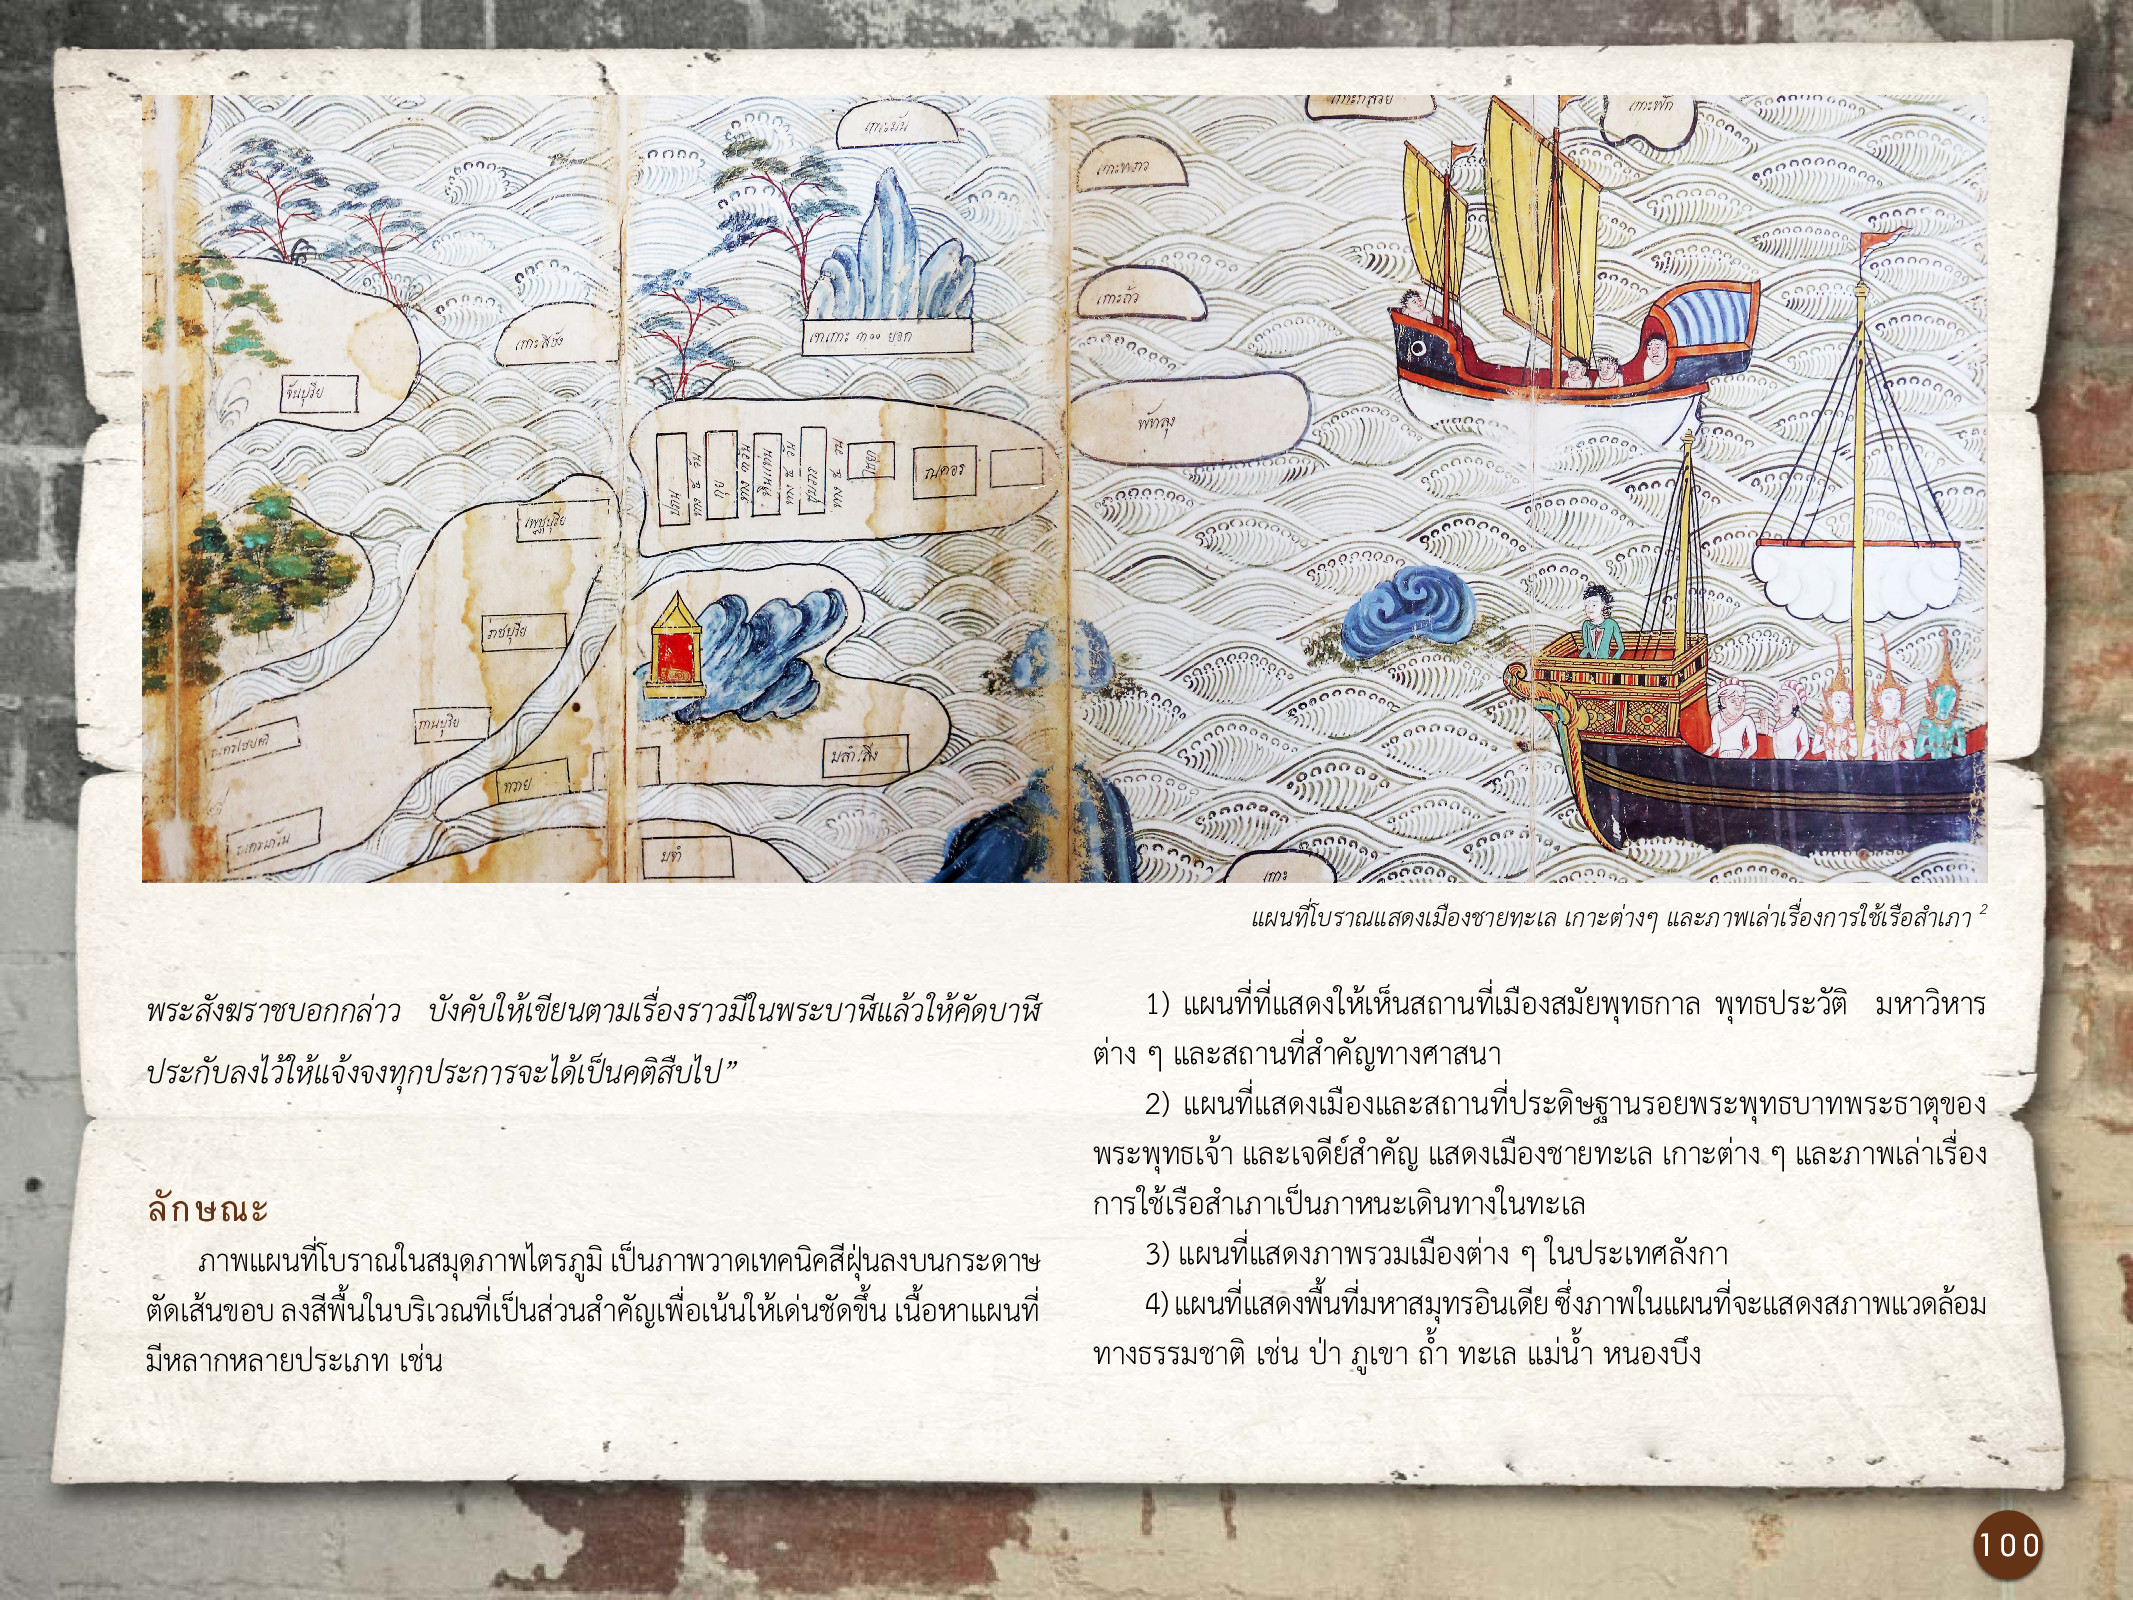 ศิลปกรรมกรุงธนบุรี ./images/encyclopedia/100.jpg